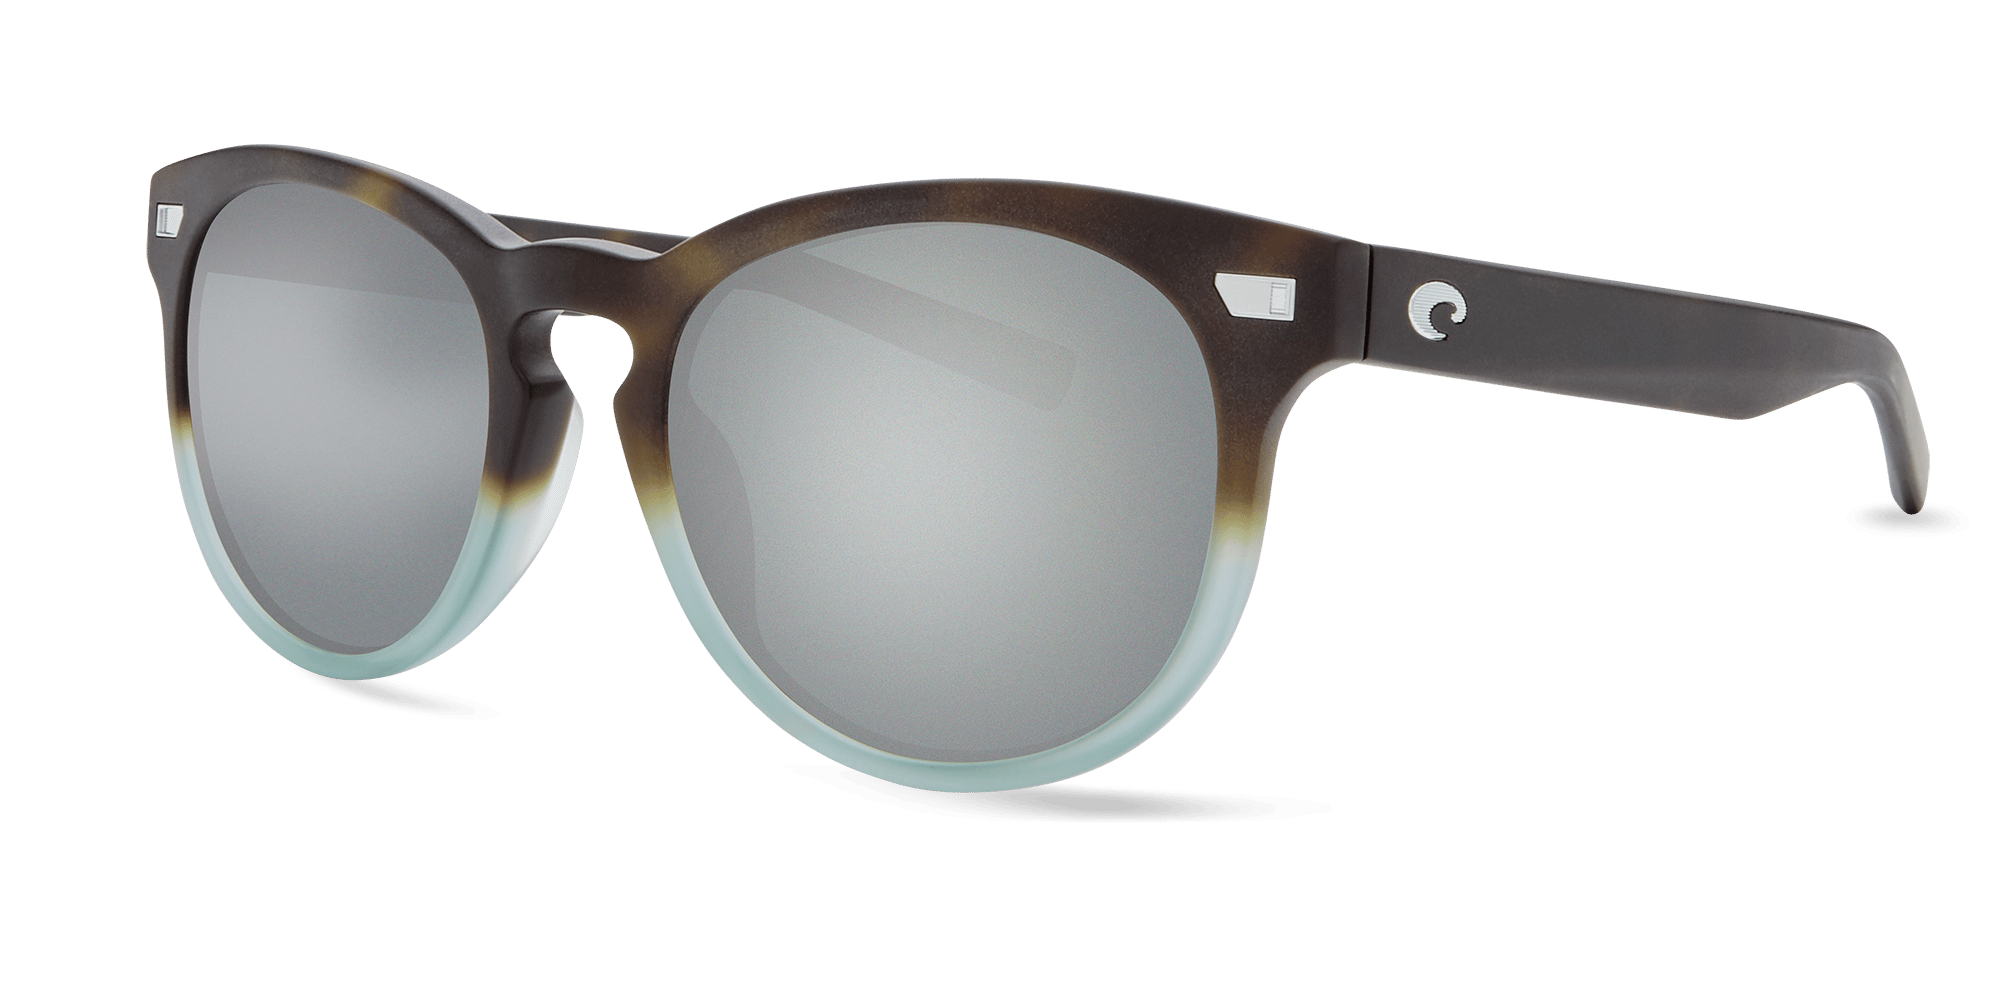 COSTA DEL MAR Prop POLARIZED Sunglasses Black White/Dark Gray 400P NEW $139 